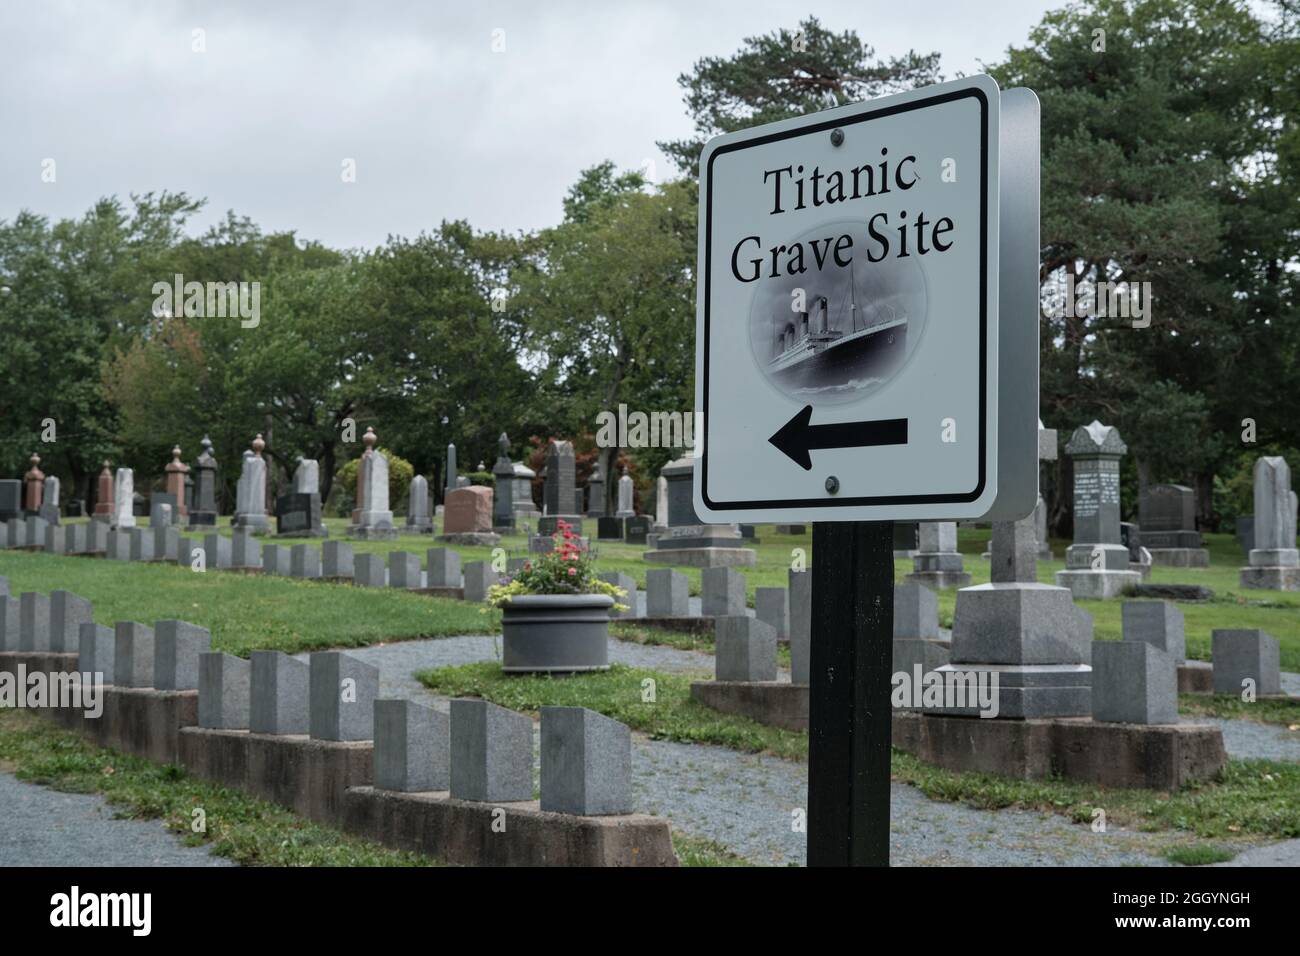 Halifax, Nuova Scozia: Il sito della tomba del Titanic presso il cimitero dei prati di Fairview. Cartello che indica la direzione del cimitero Foto Stock